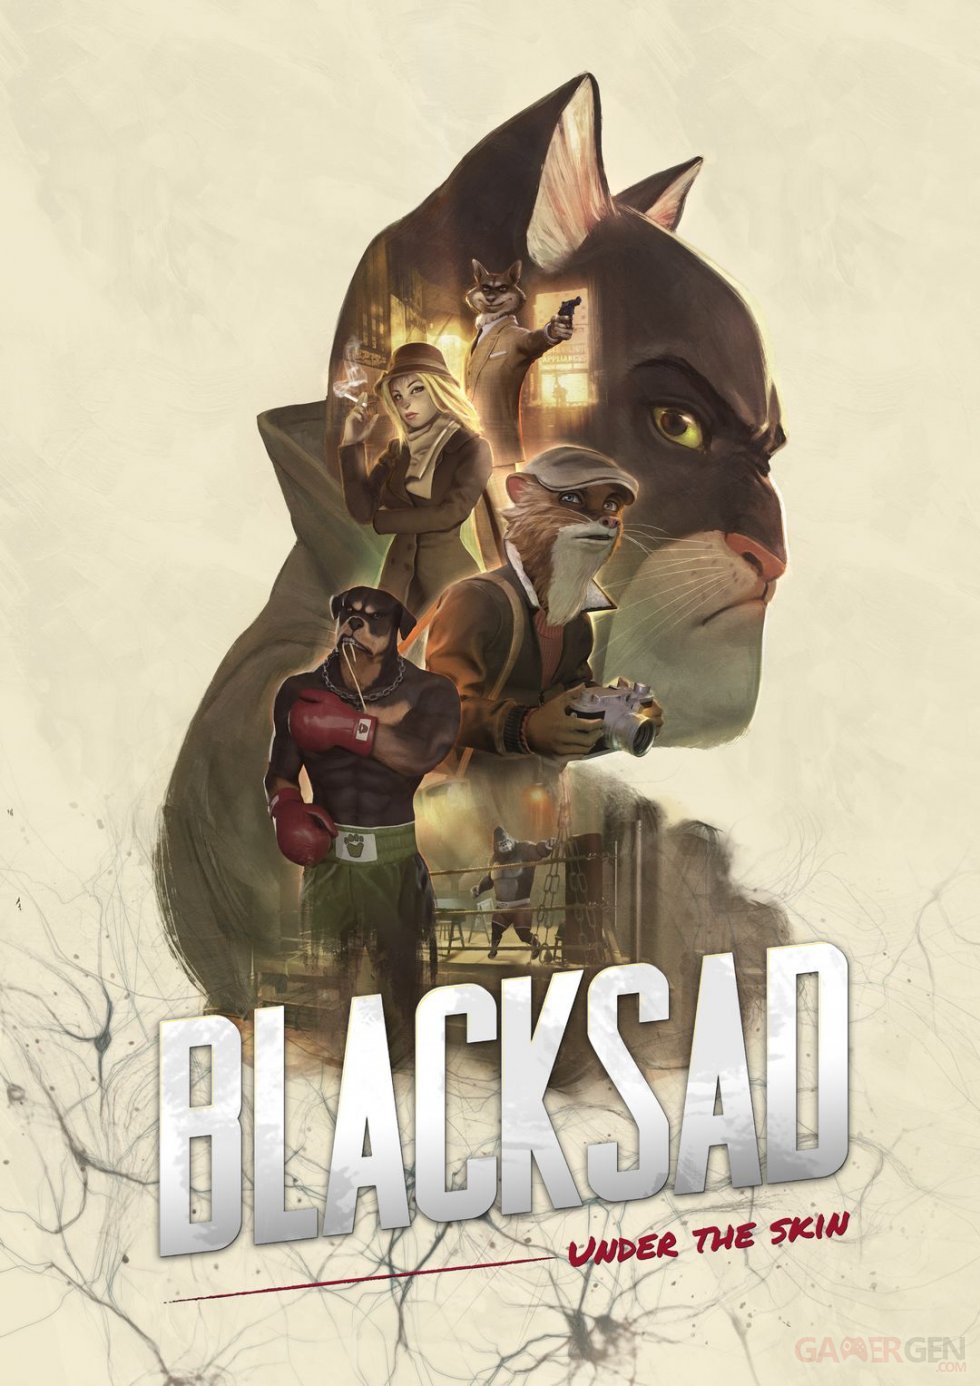 Blacksad-Under-the-skin-artwork-artbook-25-04-2019